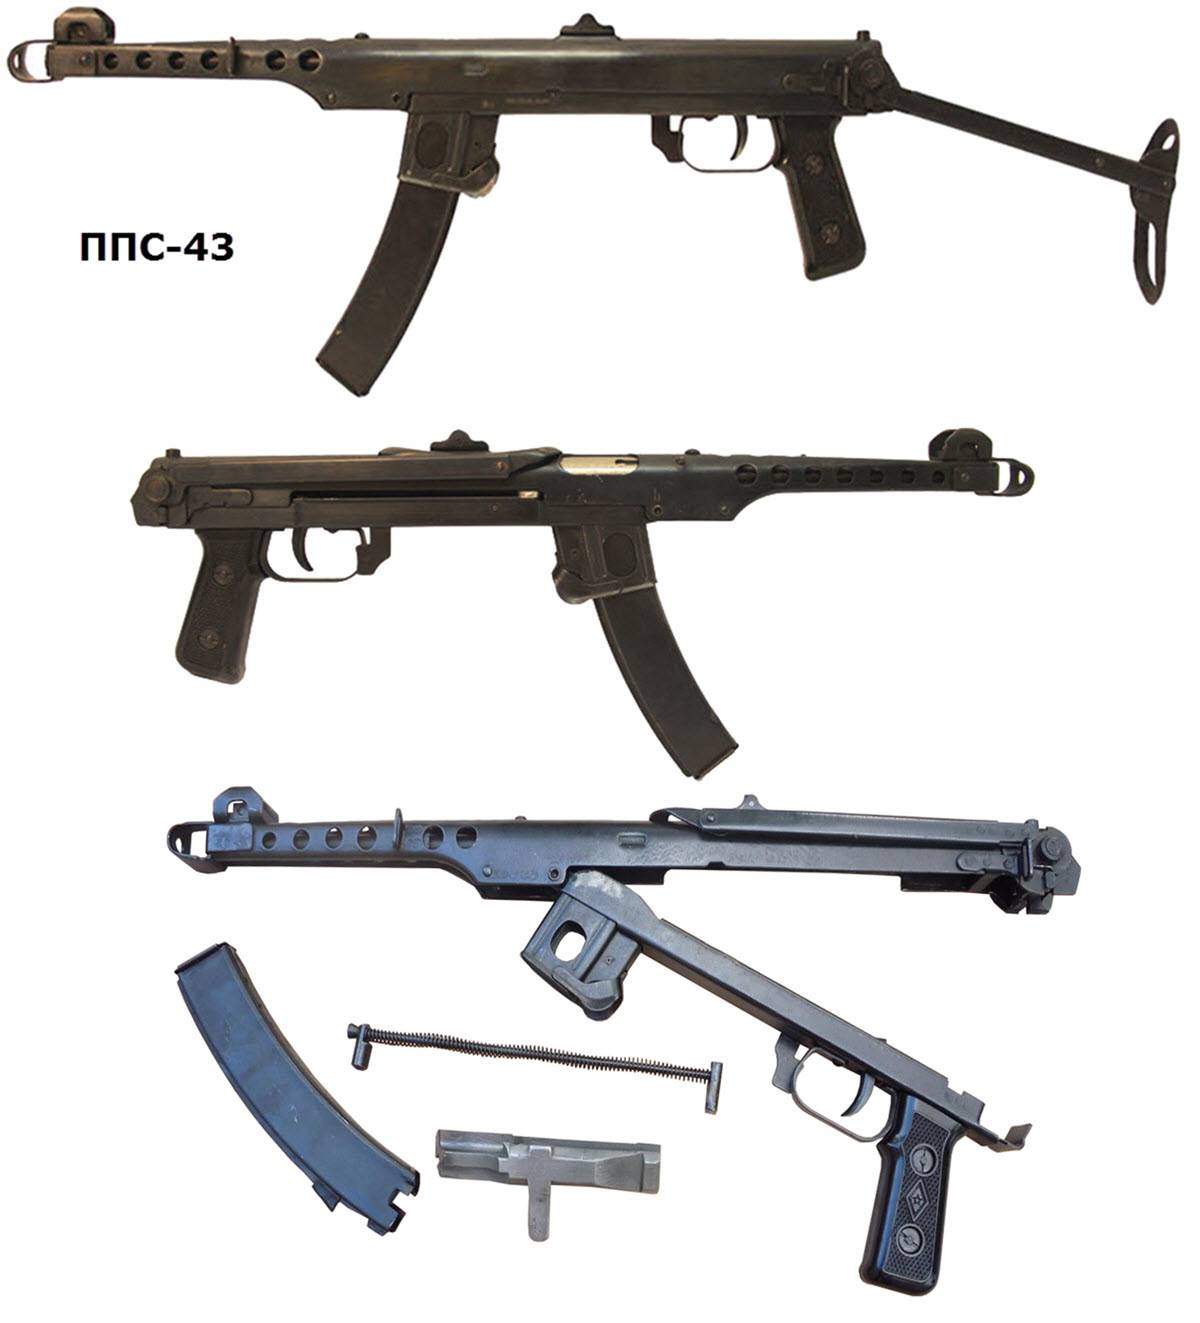 Пистолет-пулемет ппс 42, 43 судаева. фото, чертежи, характеристики